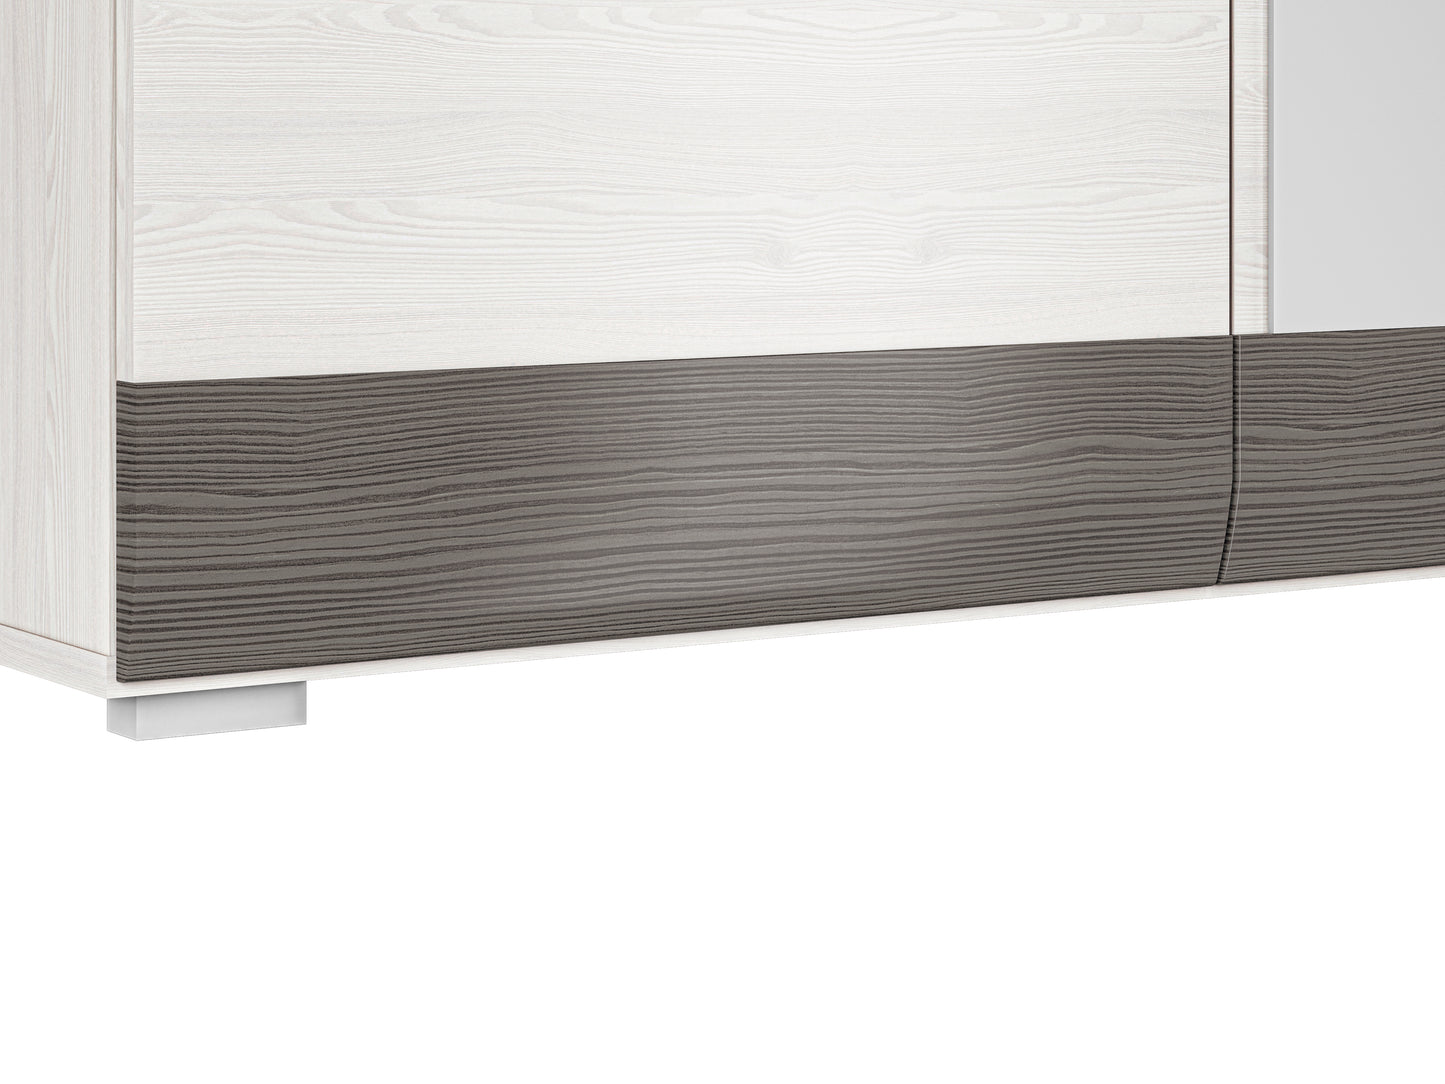 Zdjęcie przedstawiające detale nowoczesnej szafy z lustrem Blanka. Delikatnie zaoblone listwy nadają stylu szafie